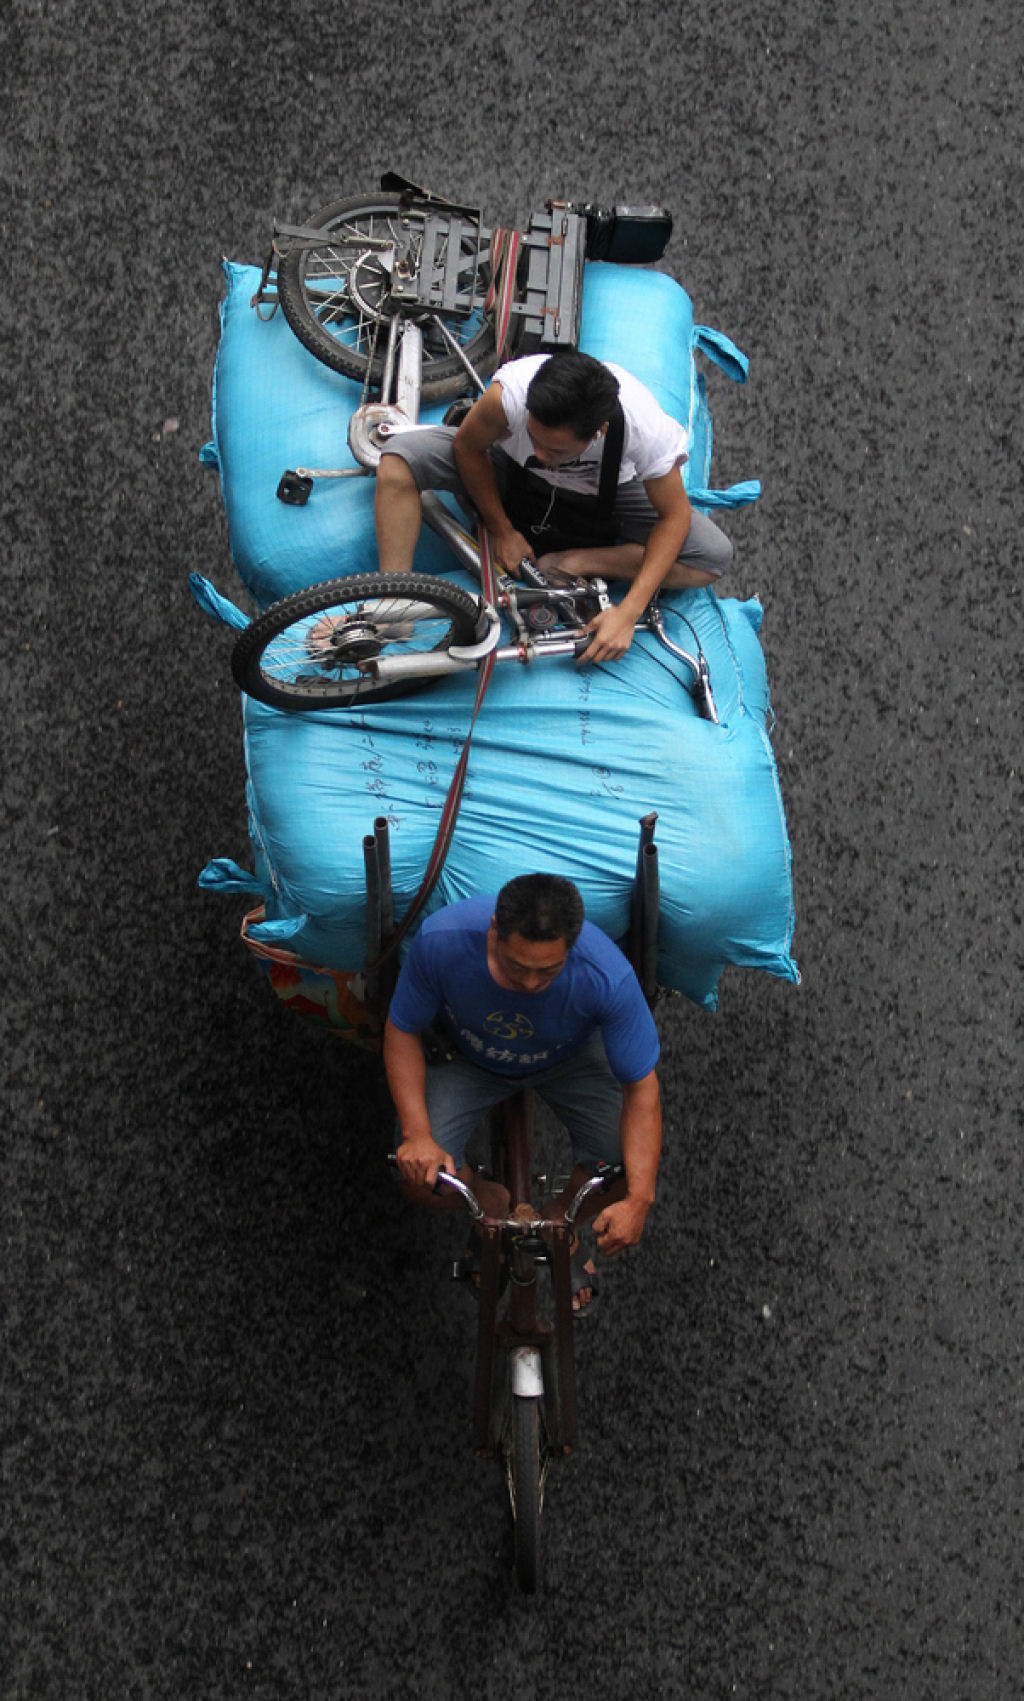 Fotos aéreas capturam a vida sobre o triciclos em Cantão, na China 11